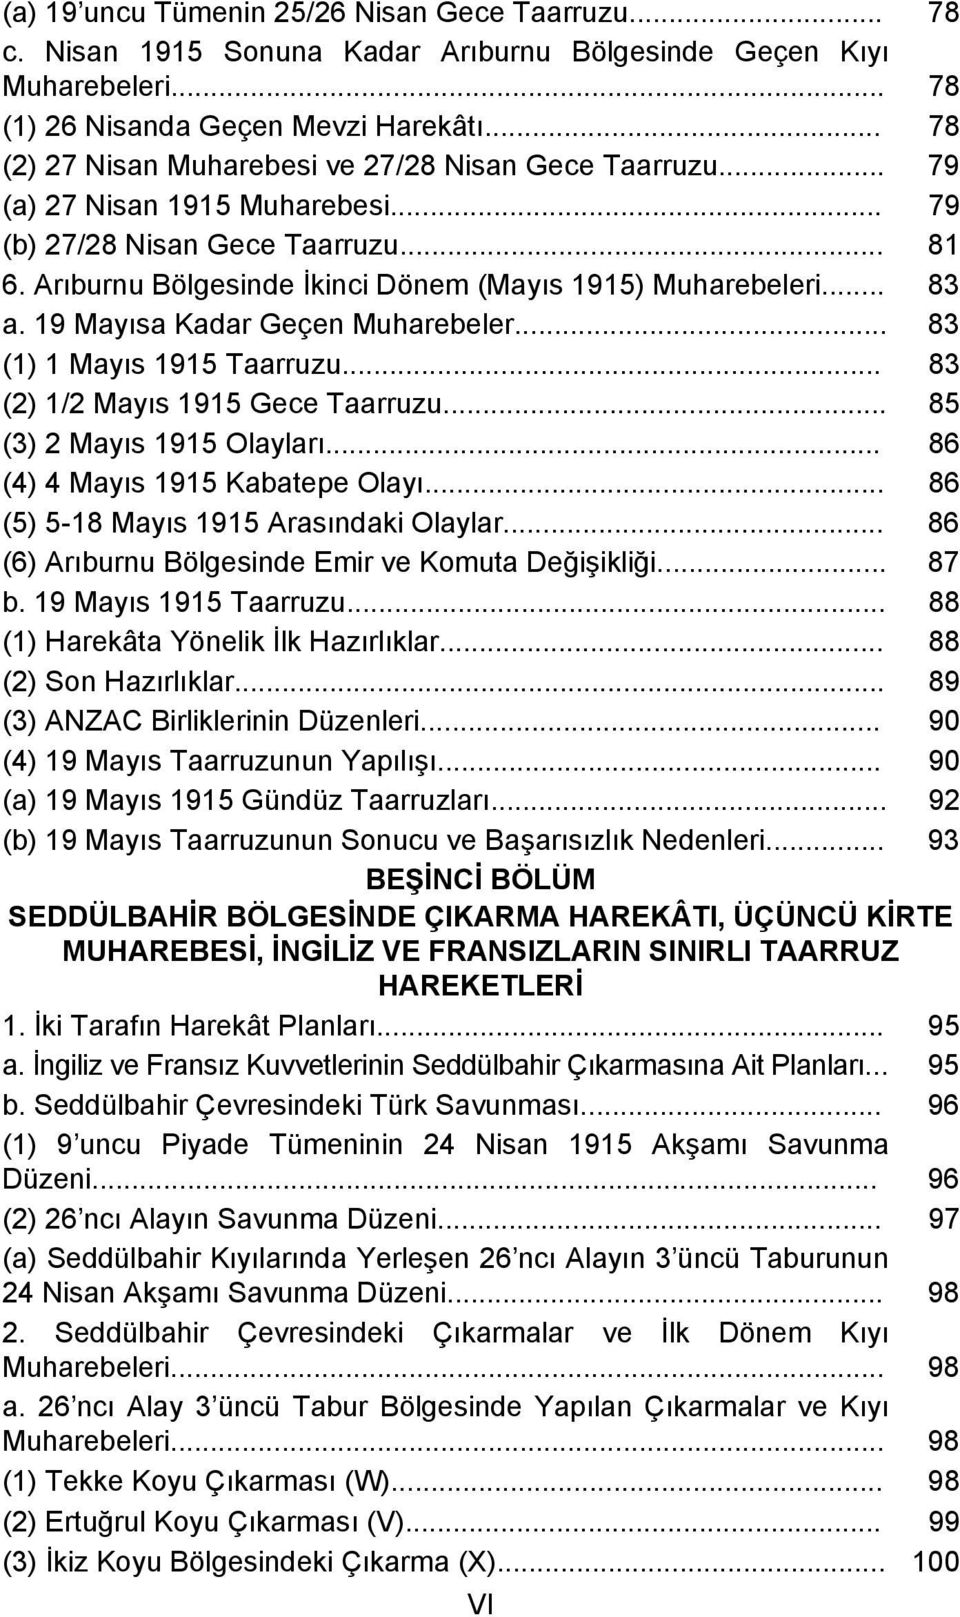 .. 83 a. 19 Mayısa Kadar Geçen Muharebeler... 83 (1) 1 Mayıs 1915 Taarruzu... 83 (2) 1/2 Mayıs 1915 Gece Taarruzu... 85 (3) 2 Mayıs 1915 Olayları... 86 (4) 4 Mayıs 1915 Kabatepe Olayı.